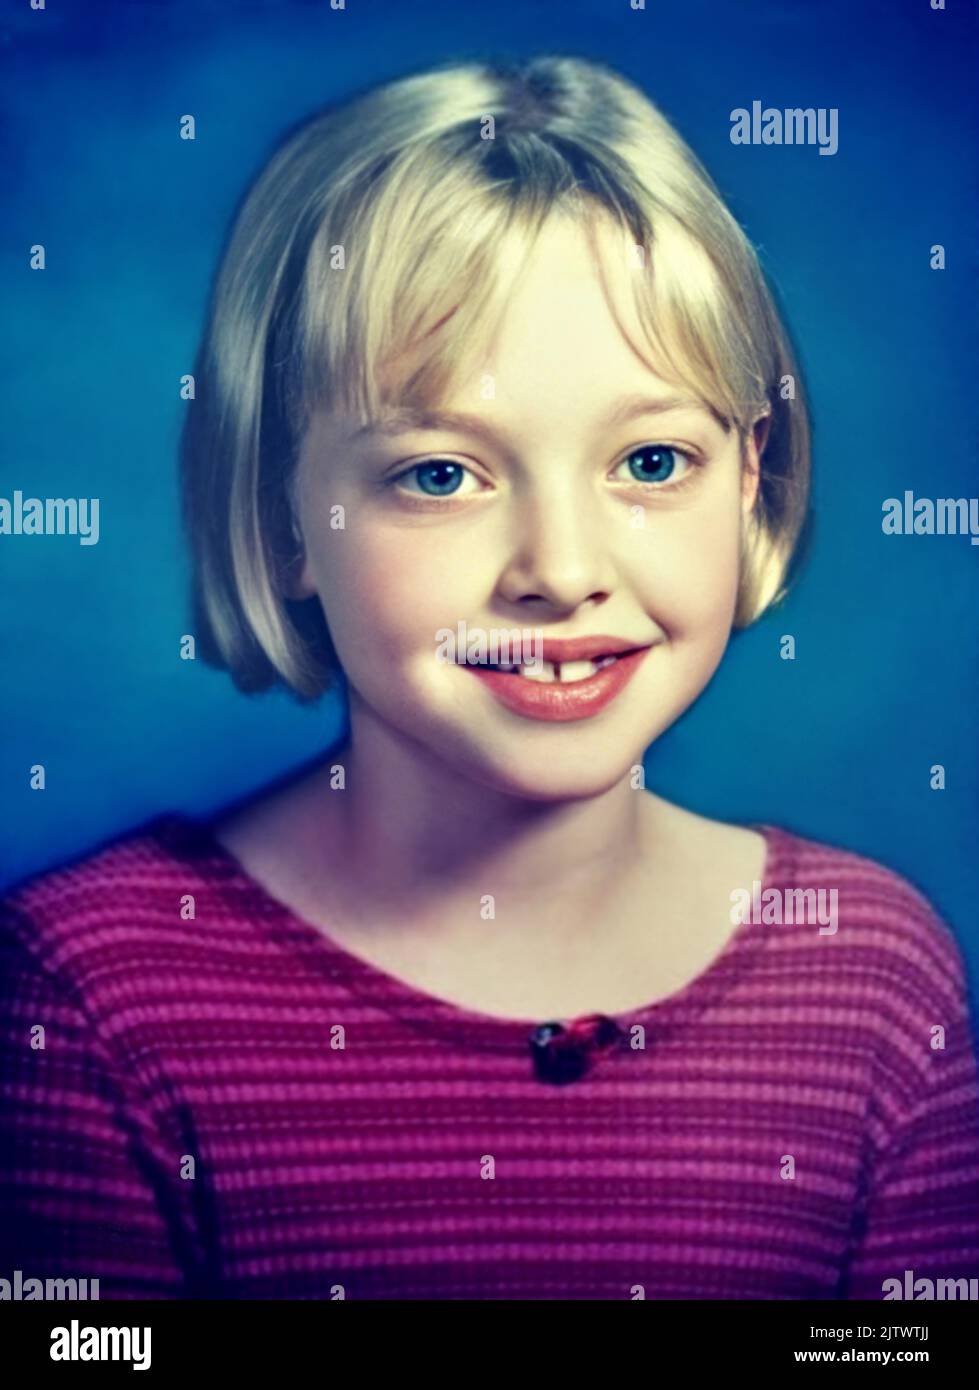 1994 CA , Etats-Unis : l' actrice américaine , mannequin et chanteuse AMANDA SEYFRIED ( née le 3 décembre 1985 ) quand était une jeune fille de 9 ans, photo de L'ÉCOLE ANNUAIRE . Photographe inconnu .- HISTOIRE - FOTO STORICHE - ATTRICE - FILM - CINÉMA - personalità da giovane giovani - personnalités quand était jeune - ANNUARIO SCOLASTICO - SEX SYMBOL - ADOLESCENT - blond - bionda - sourire - sorriso - BAMBINA - bambino - GAMINI - ENFANT - ENFANTS - ENFANCE - INFANZIA --- ARCHIVIO GBB Banque D'Images